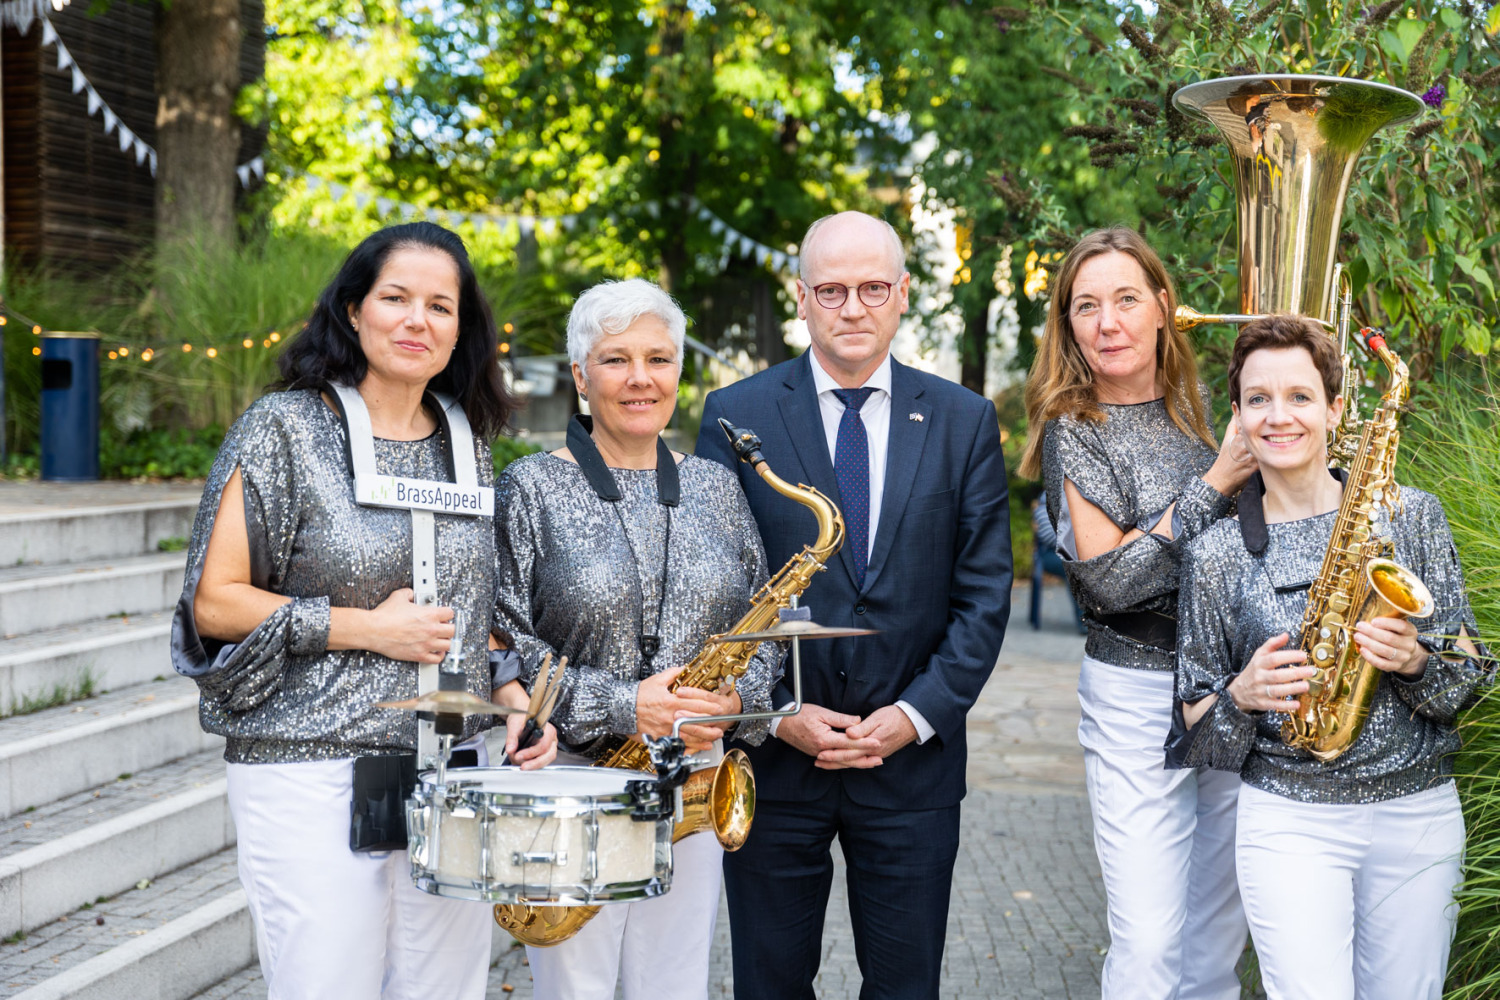 4 Frauen mit Musikinstrumenten stehen mit Mann in einer Gruppe